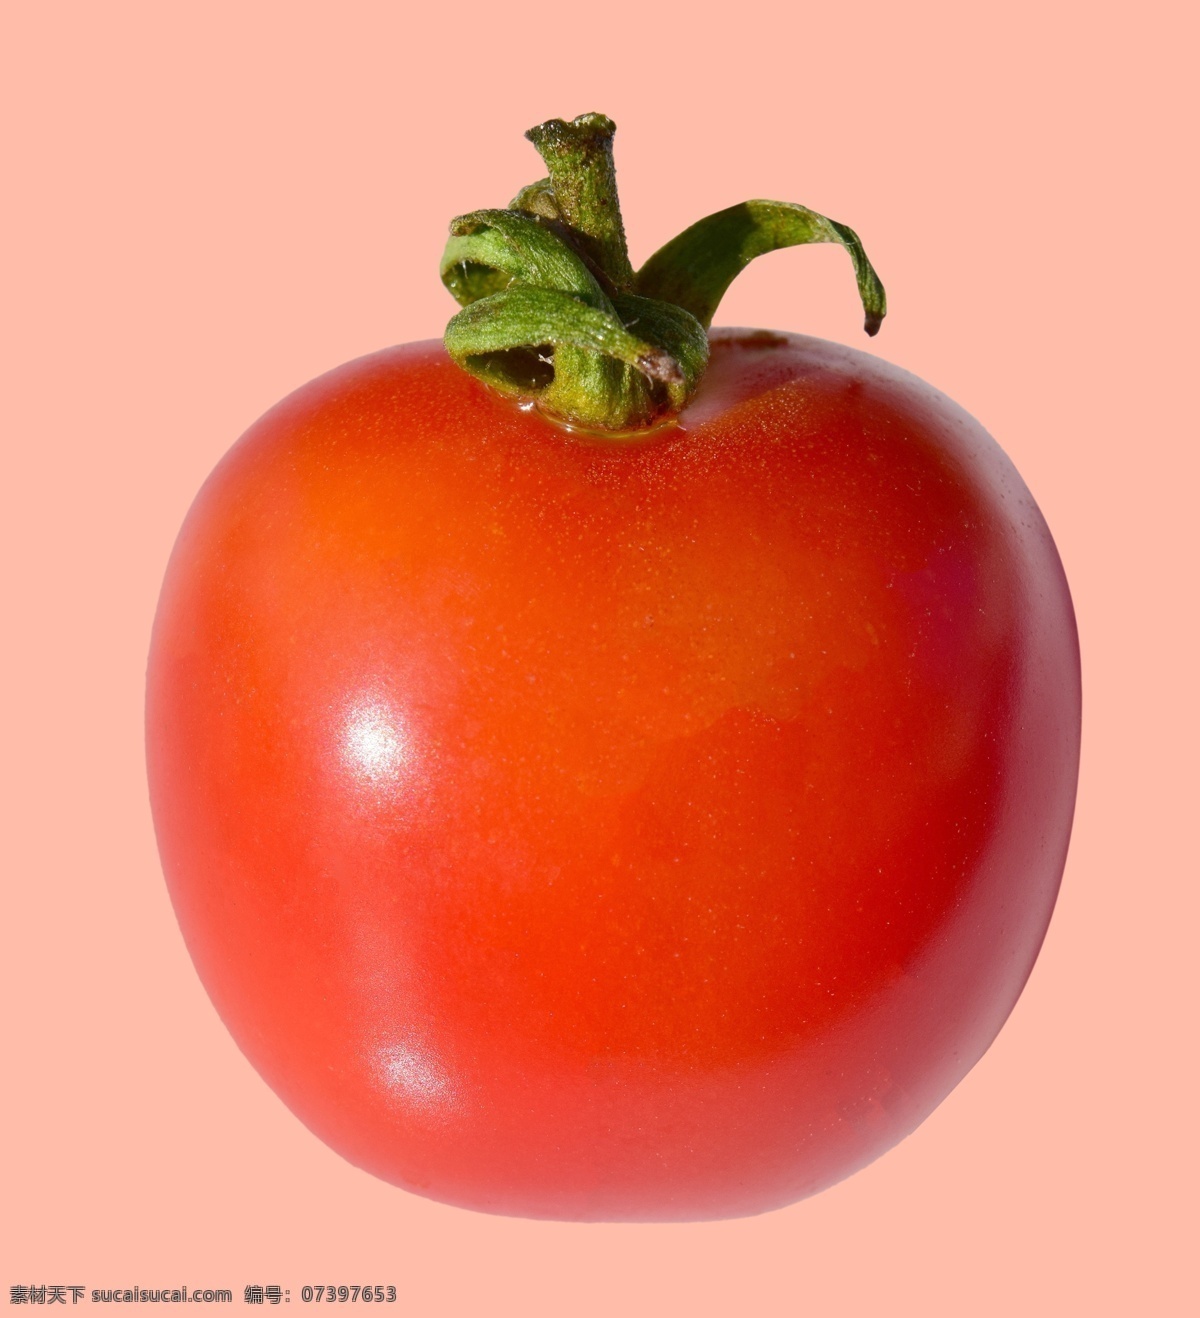 西红柿图片 西红柿 柿子 蔬菜 果蔬 生活百科 餐饮美食